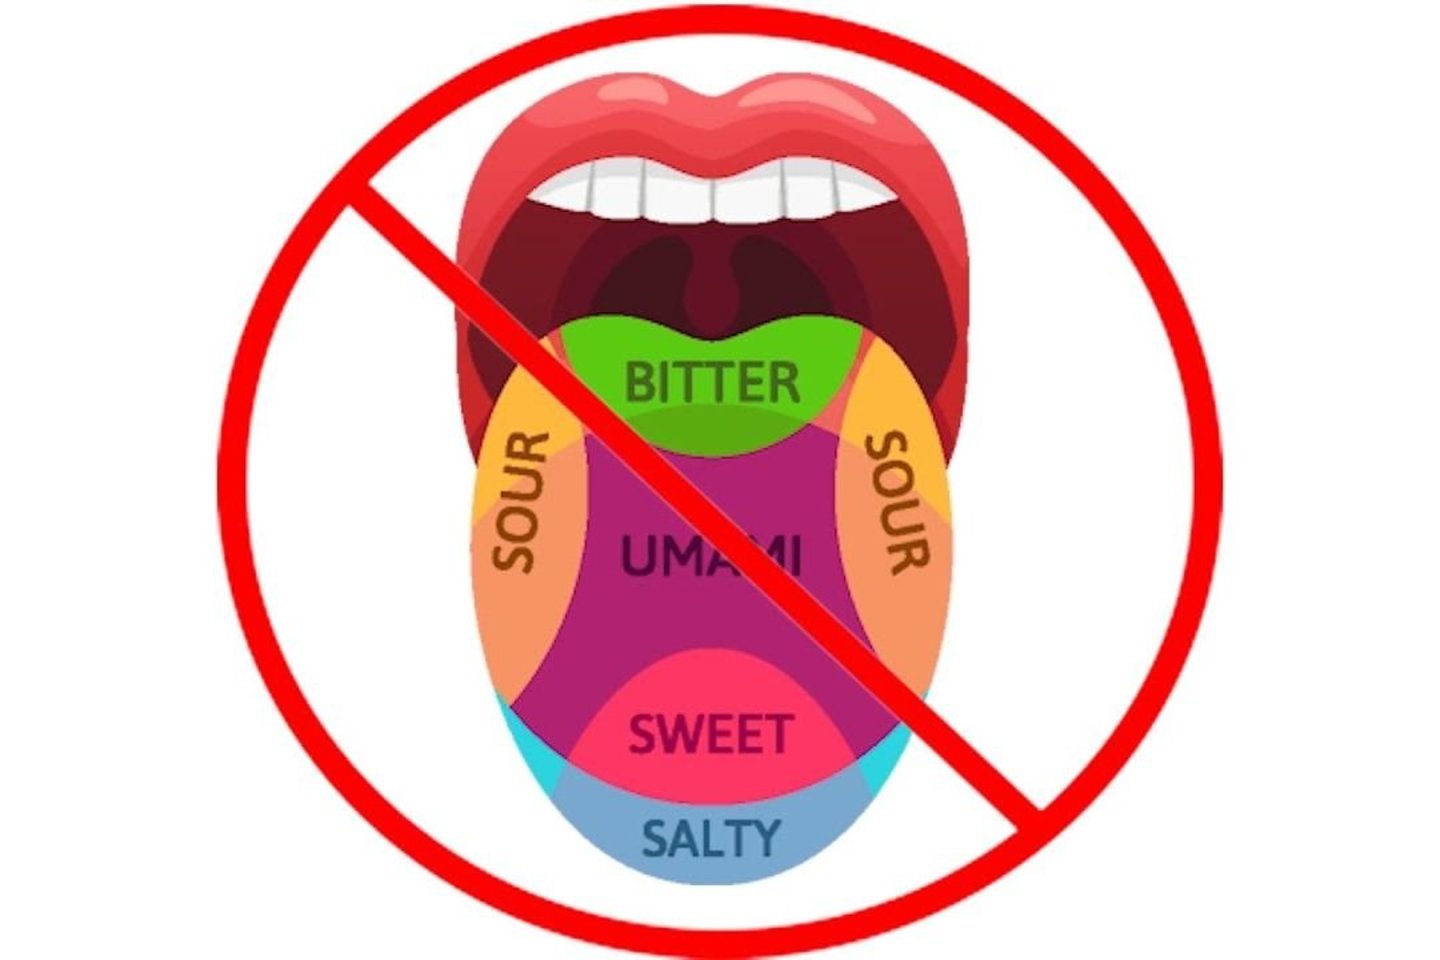  Galimybė jausti saldų, sūrų, rūgštų ir kartų skonį nėra priskirta atskiroms liežuvio dalims. Receptoriai, kurie jaučia visus šiuos skonius, yra pasiskirstę tolygiai po visą liežuvį.